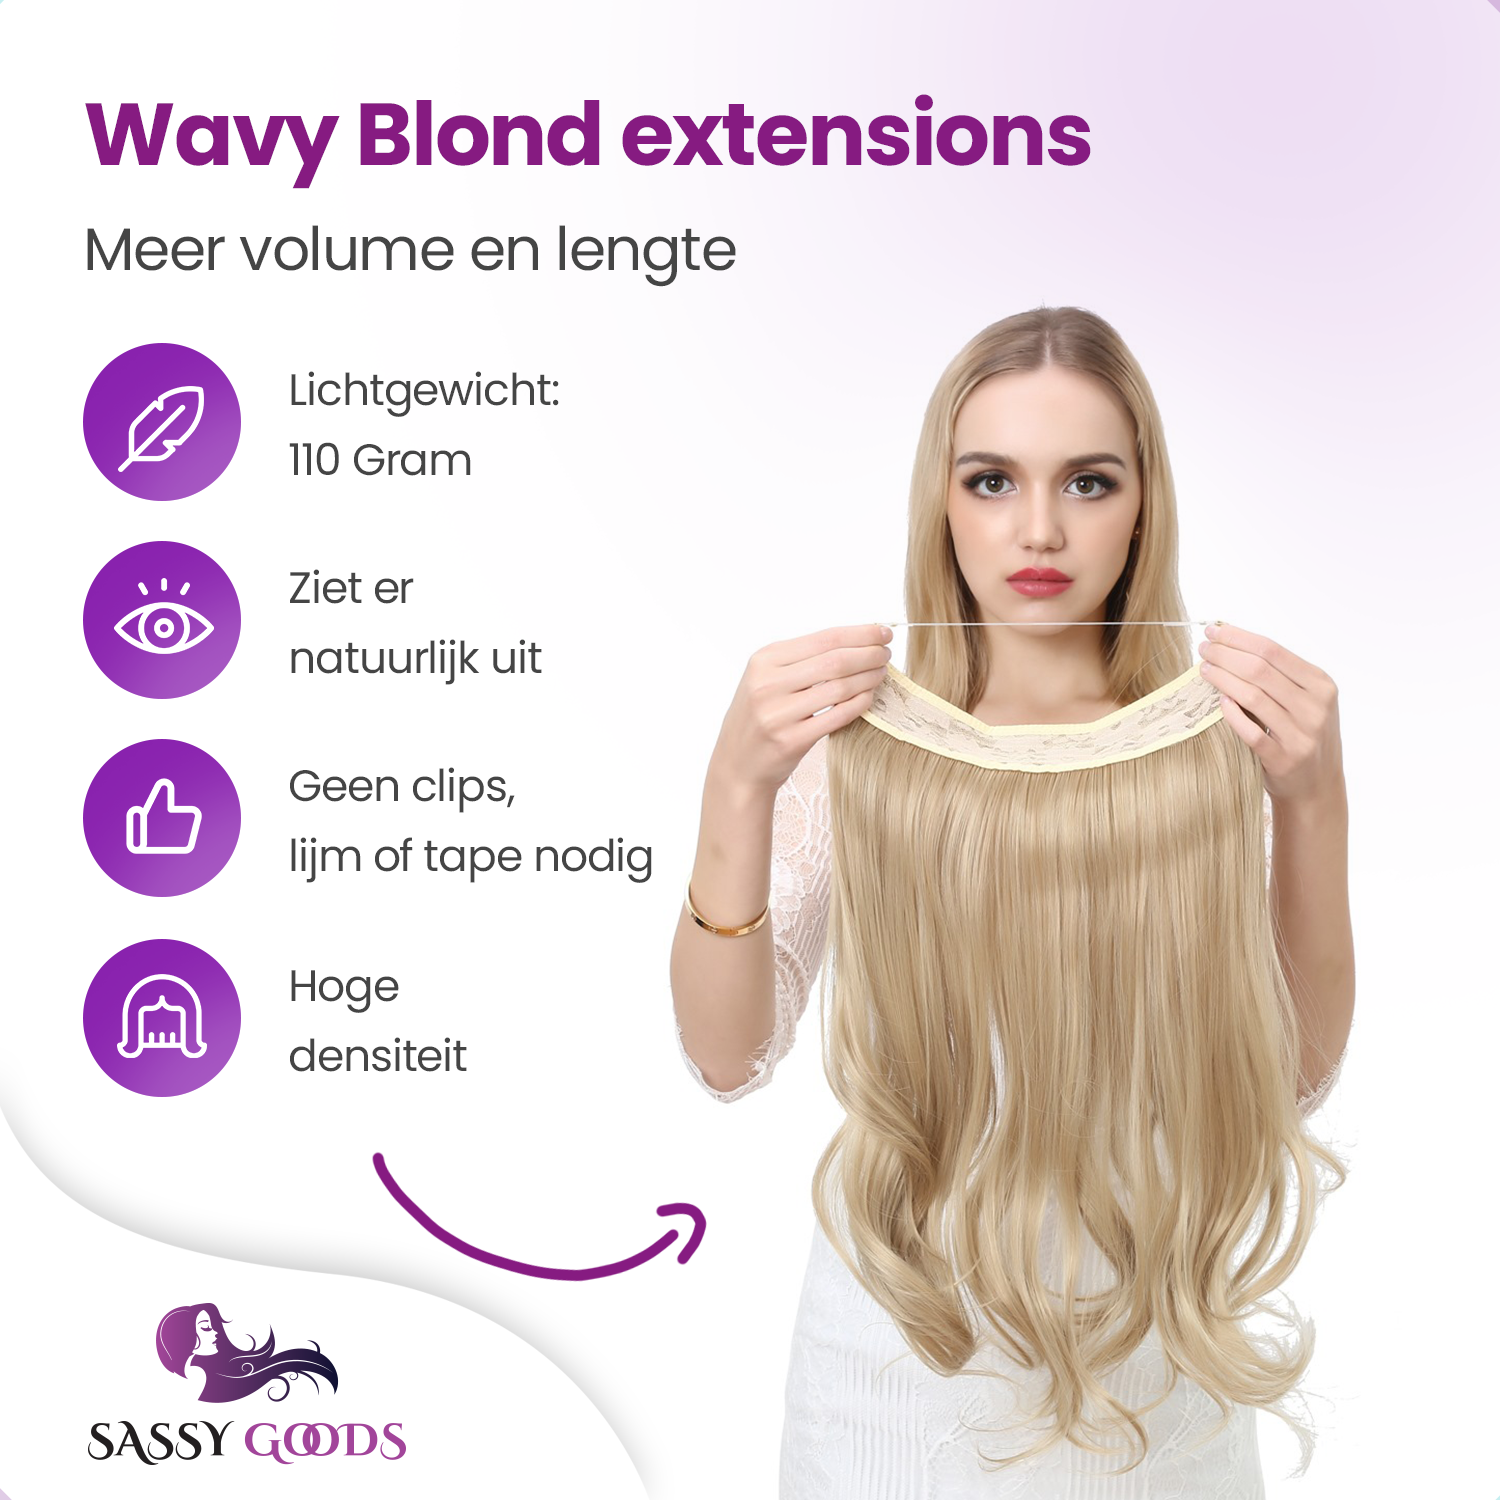 Premium Hair Extensions - Blond Golvend - Onzichtbare Scheiding - Natuurlijke Look - Hair extension - 45 cm